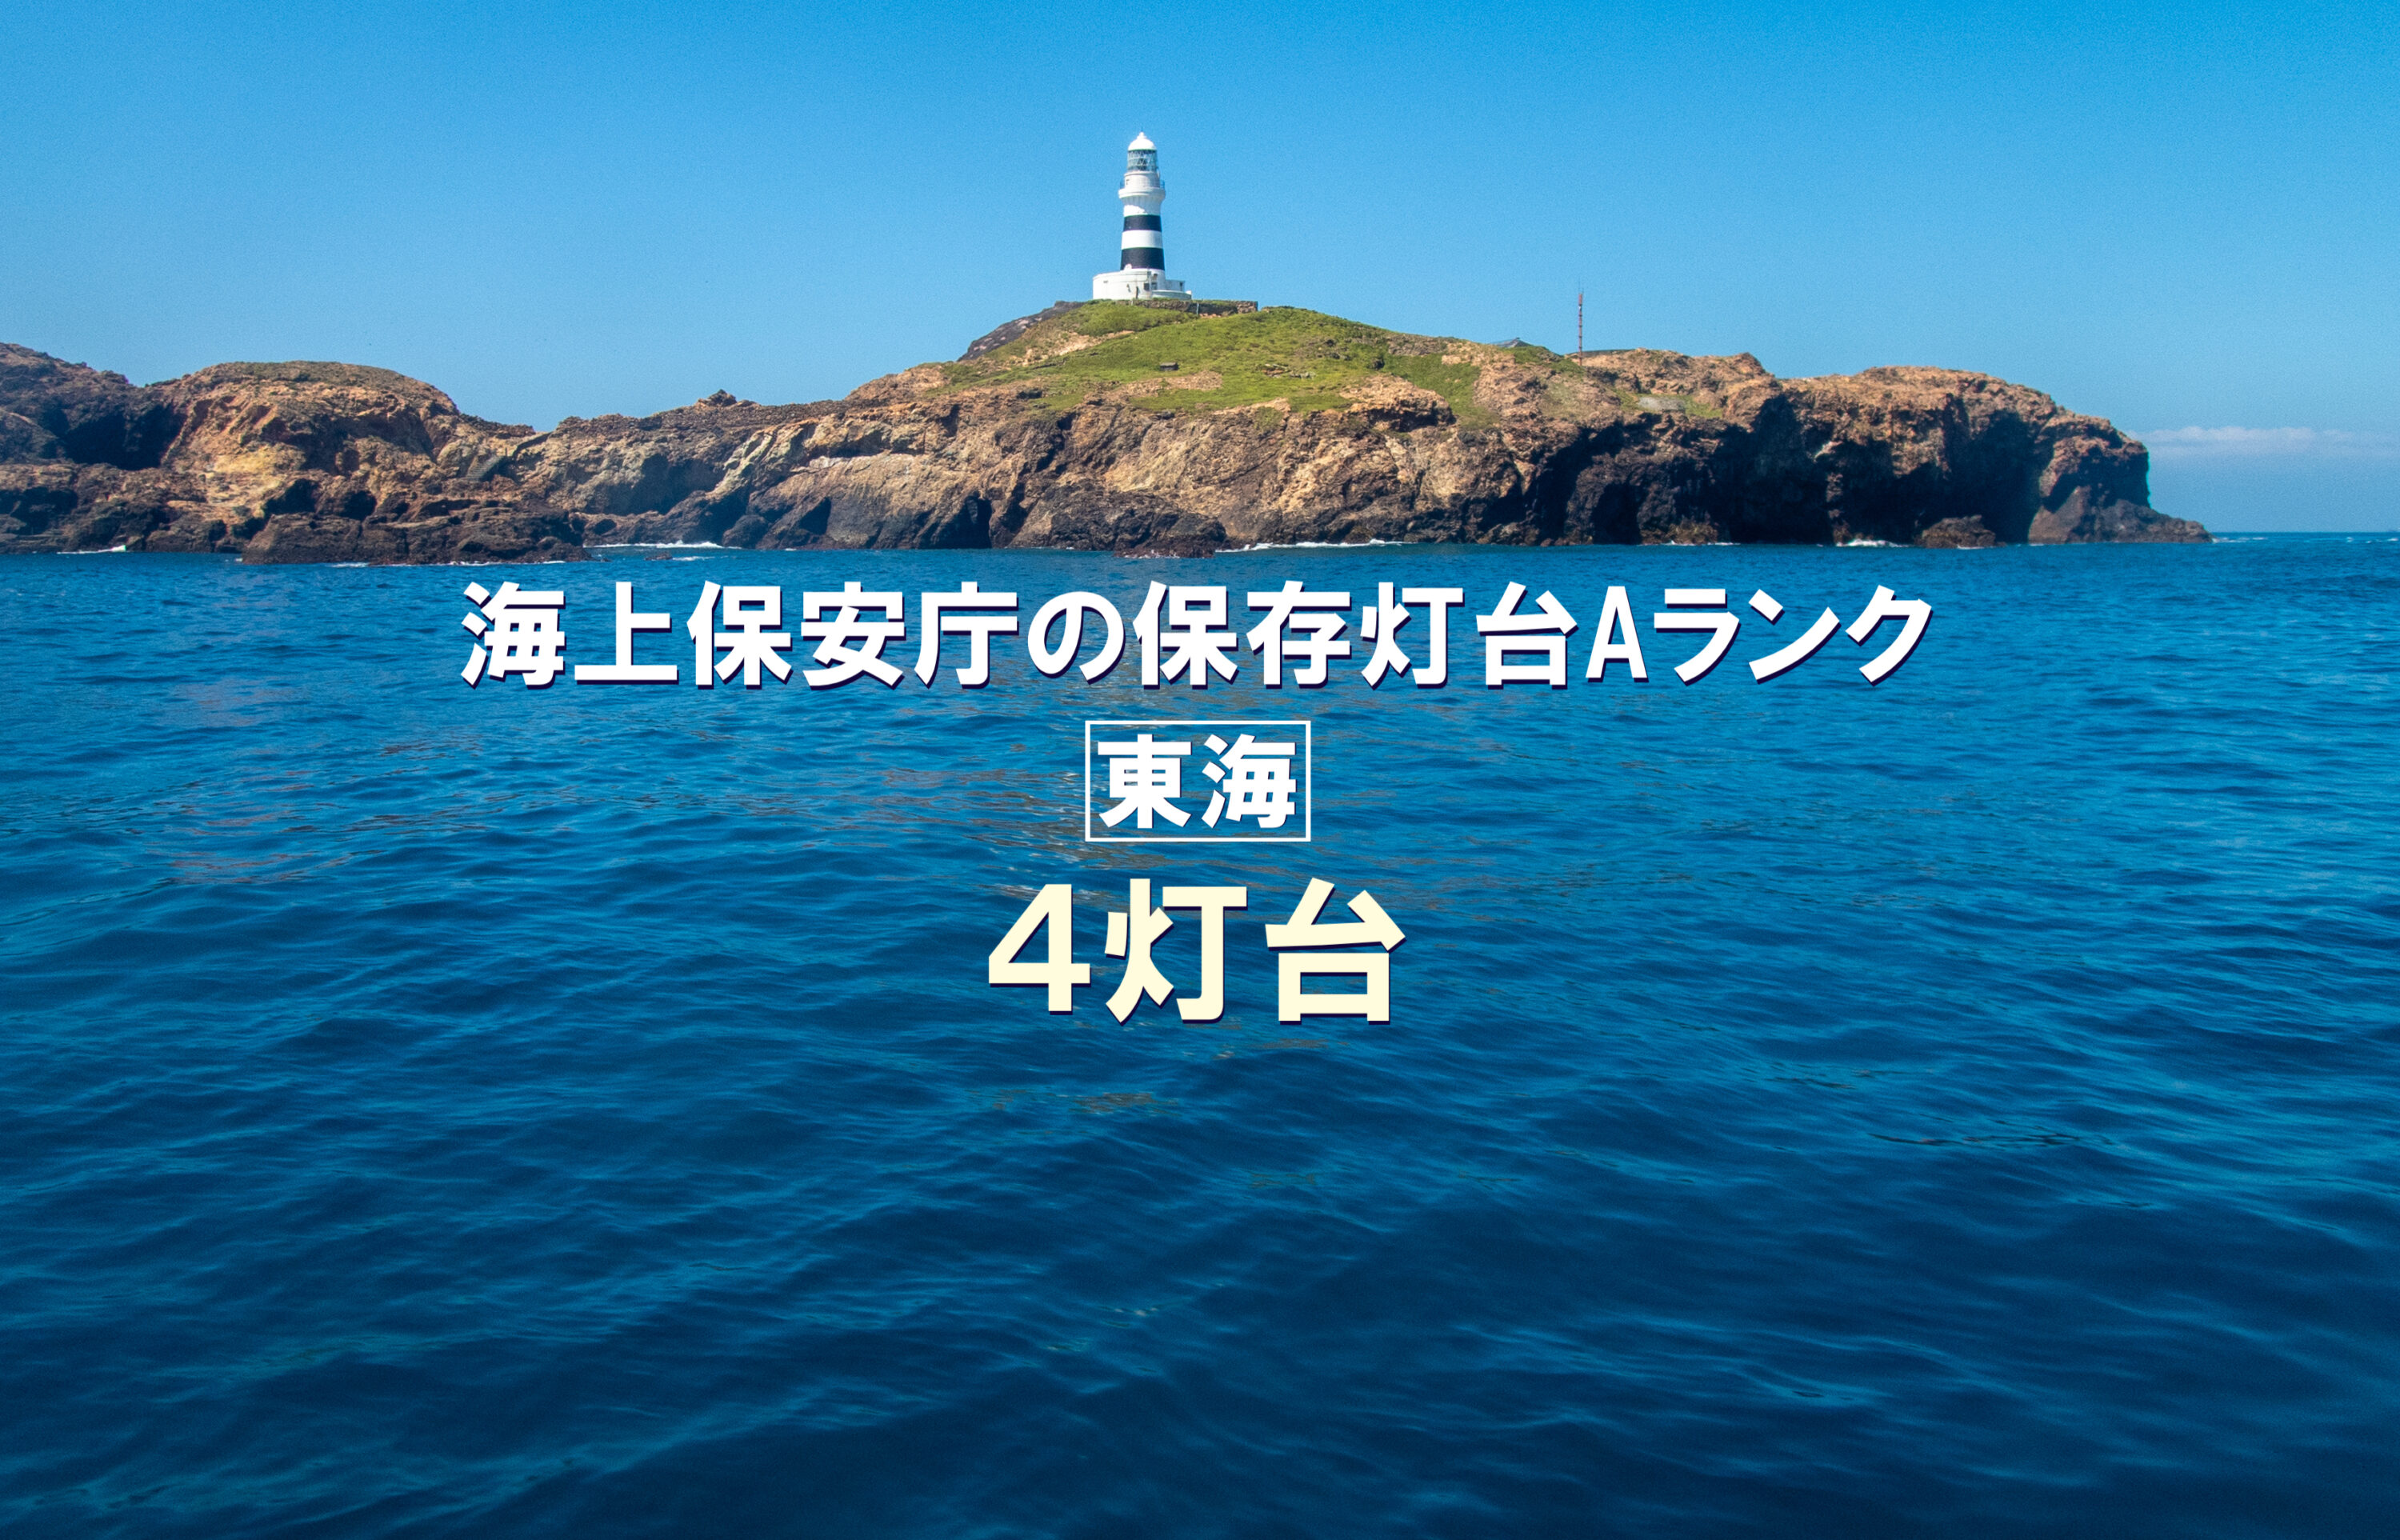 海上保安庁の保存灯台Aランク 東海4灯台